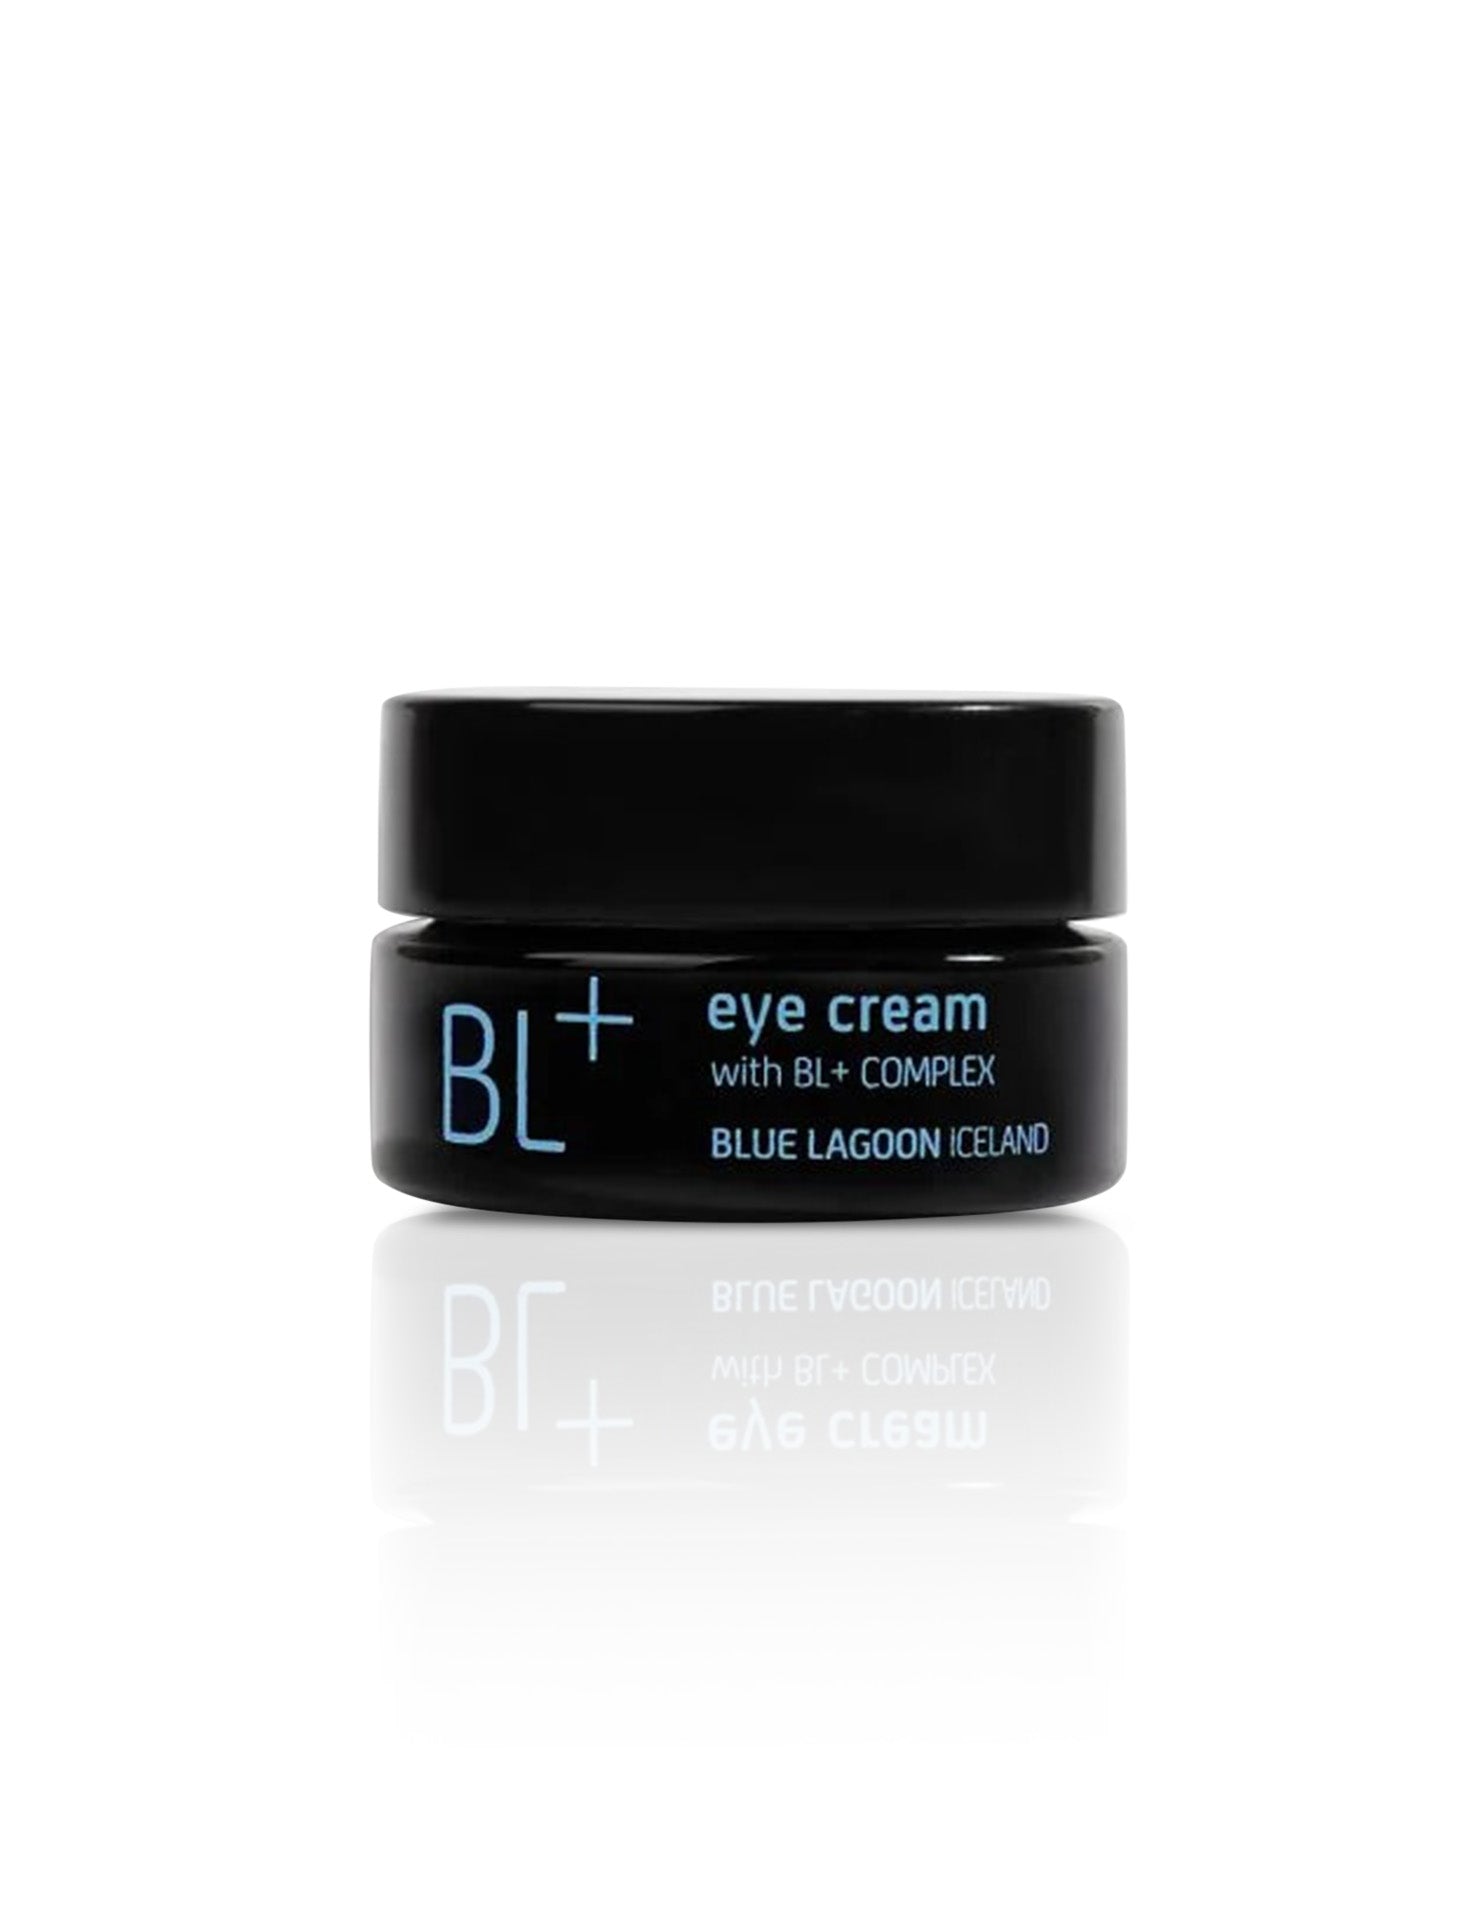 BL+ Eye Cream